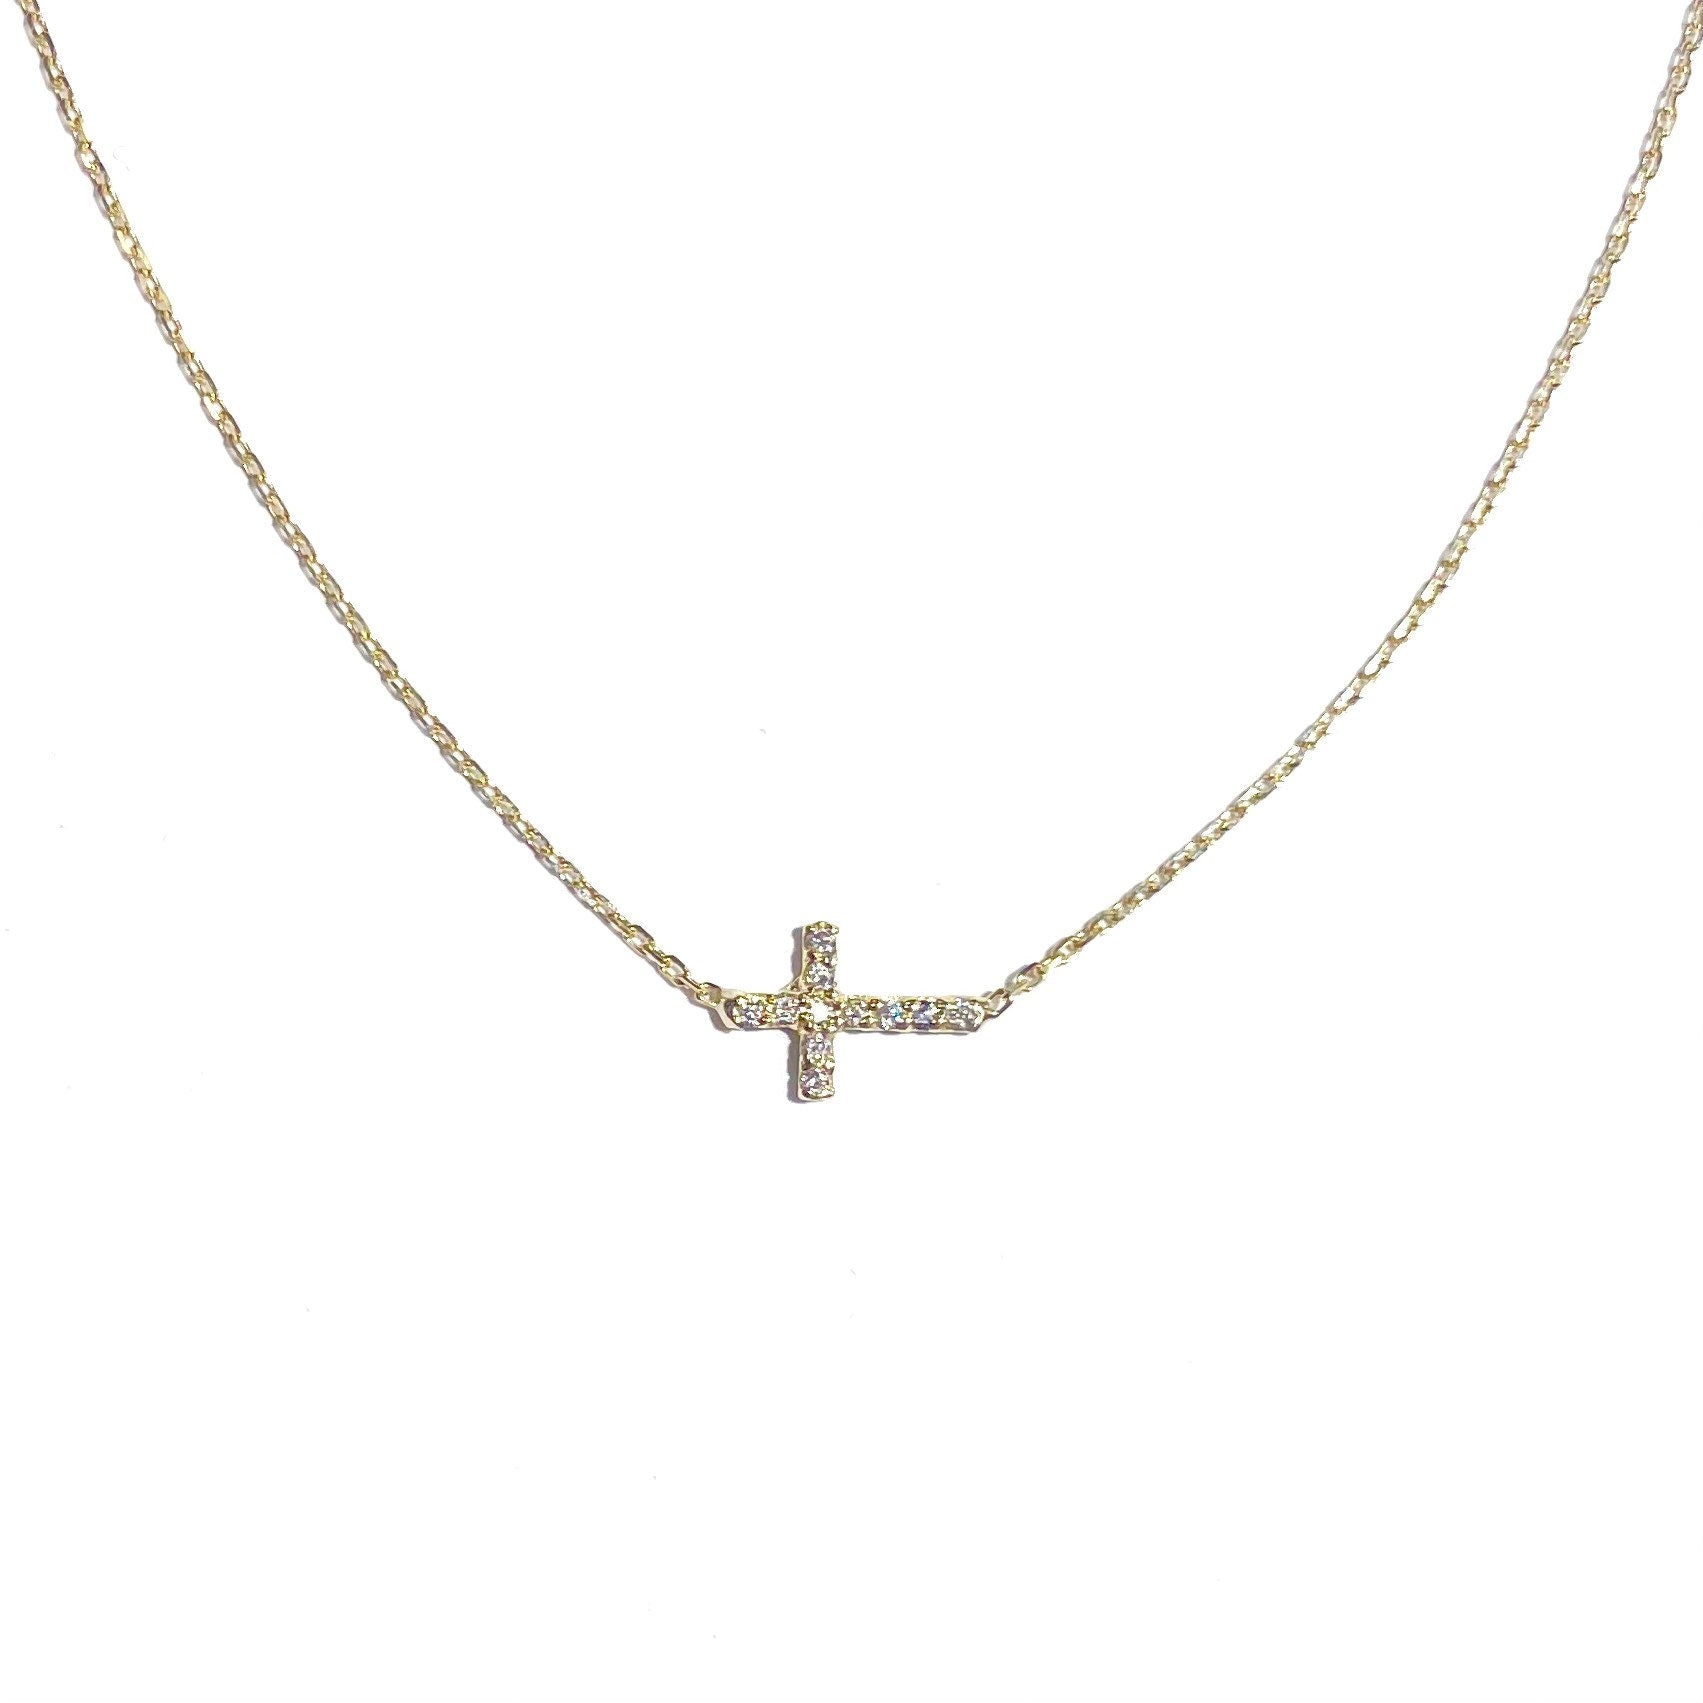 14k Gold & 1/3 Ctw Diamond Sideways Cross Necklace, 16-18 Inch - The Black  Bow Jewelry Company